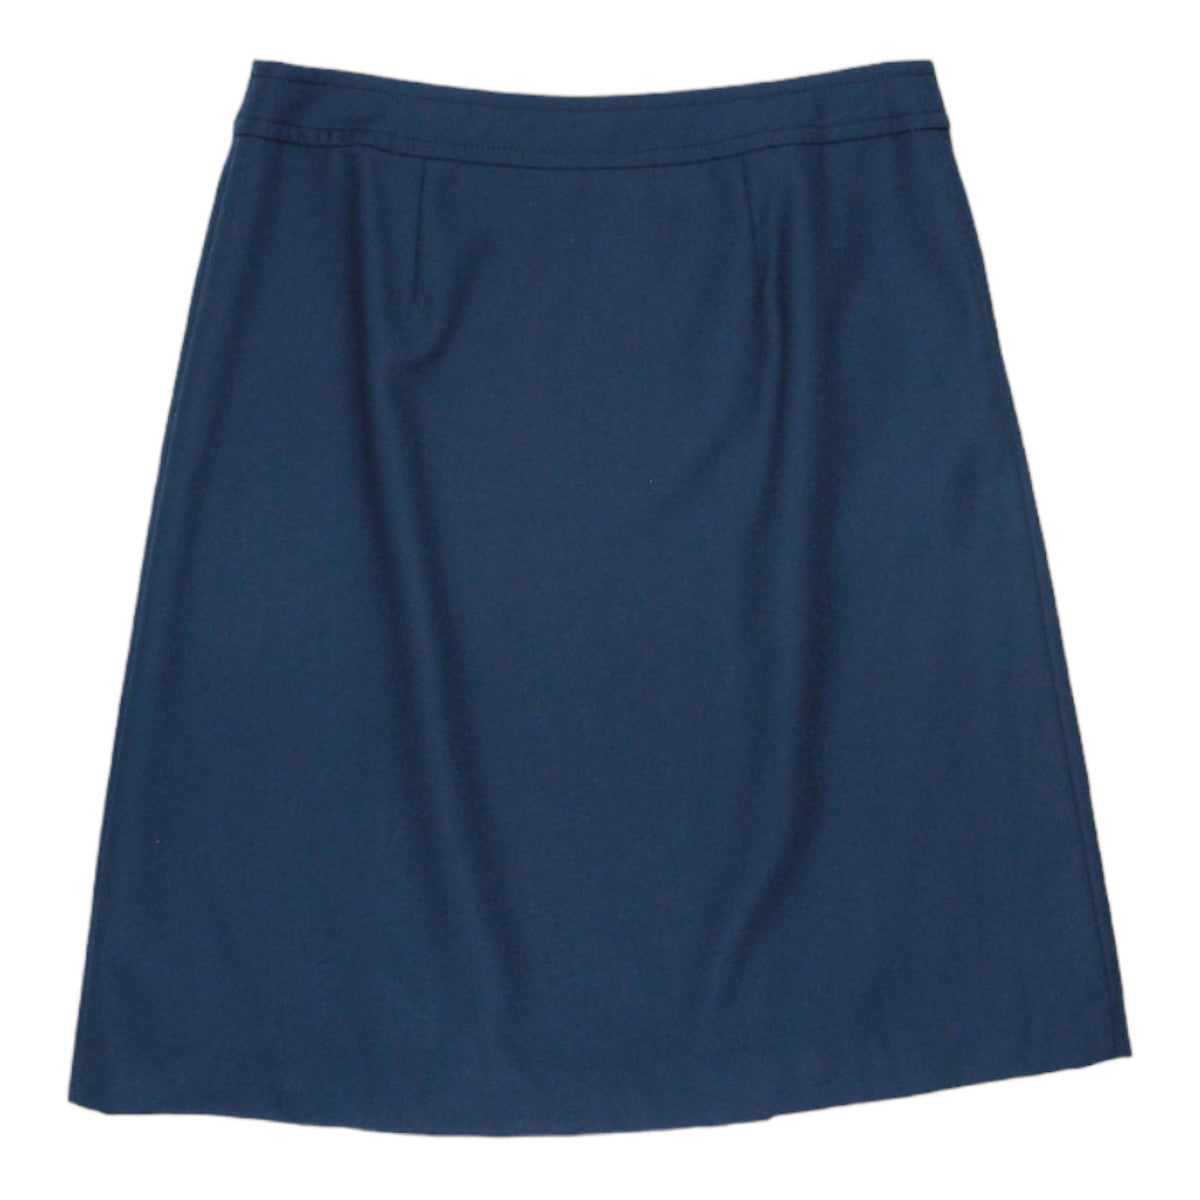 Orla Kiely Teal Flannel Wrap Skirt